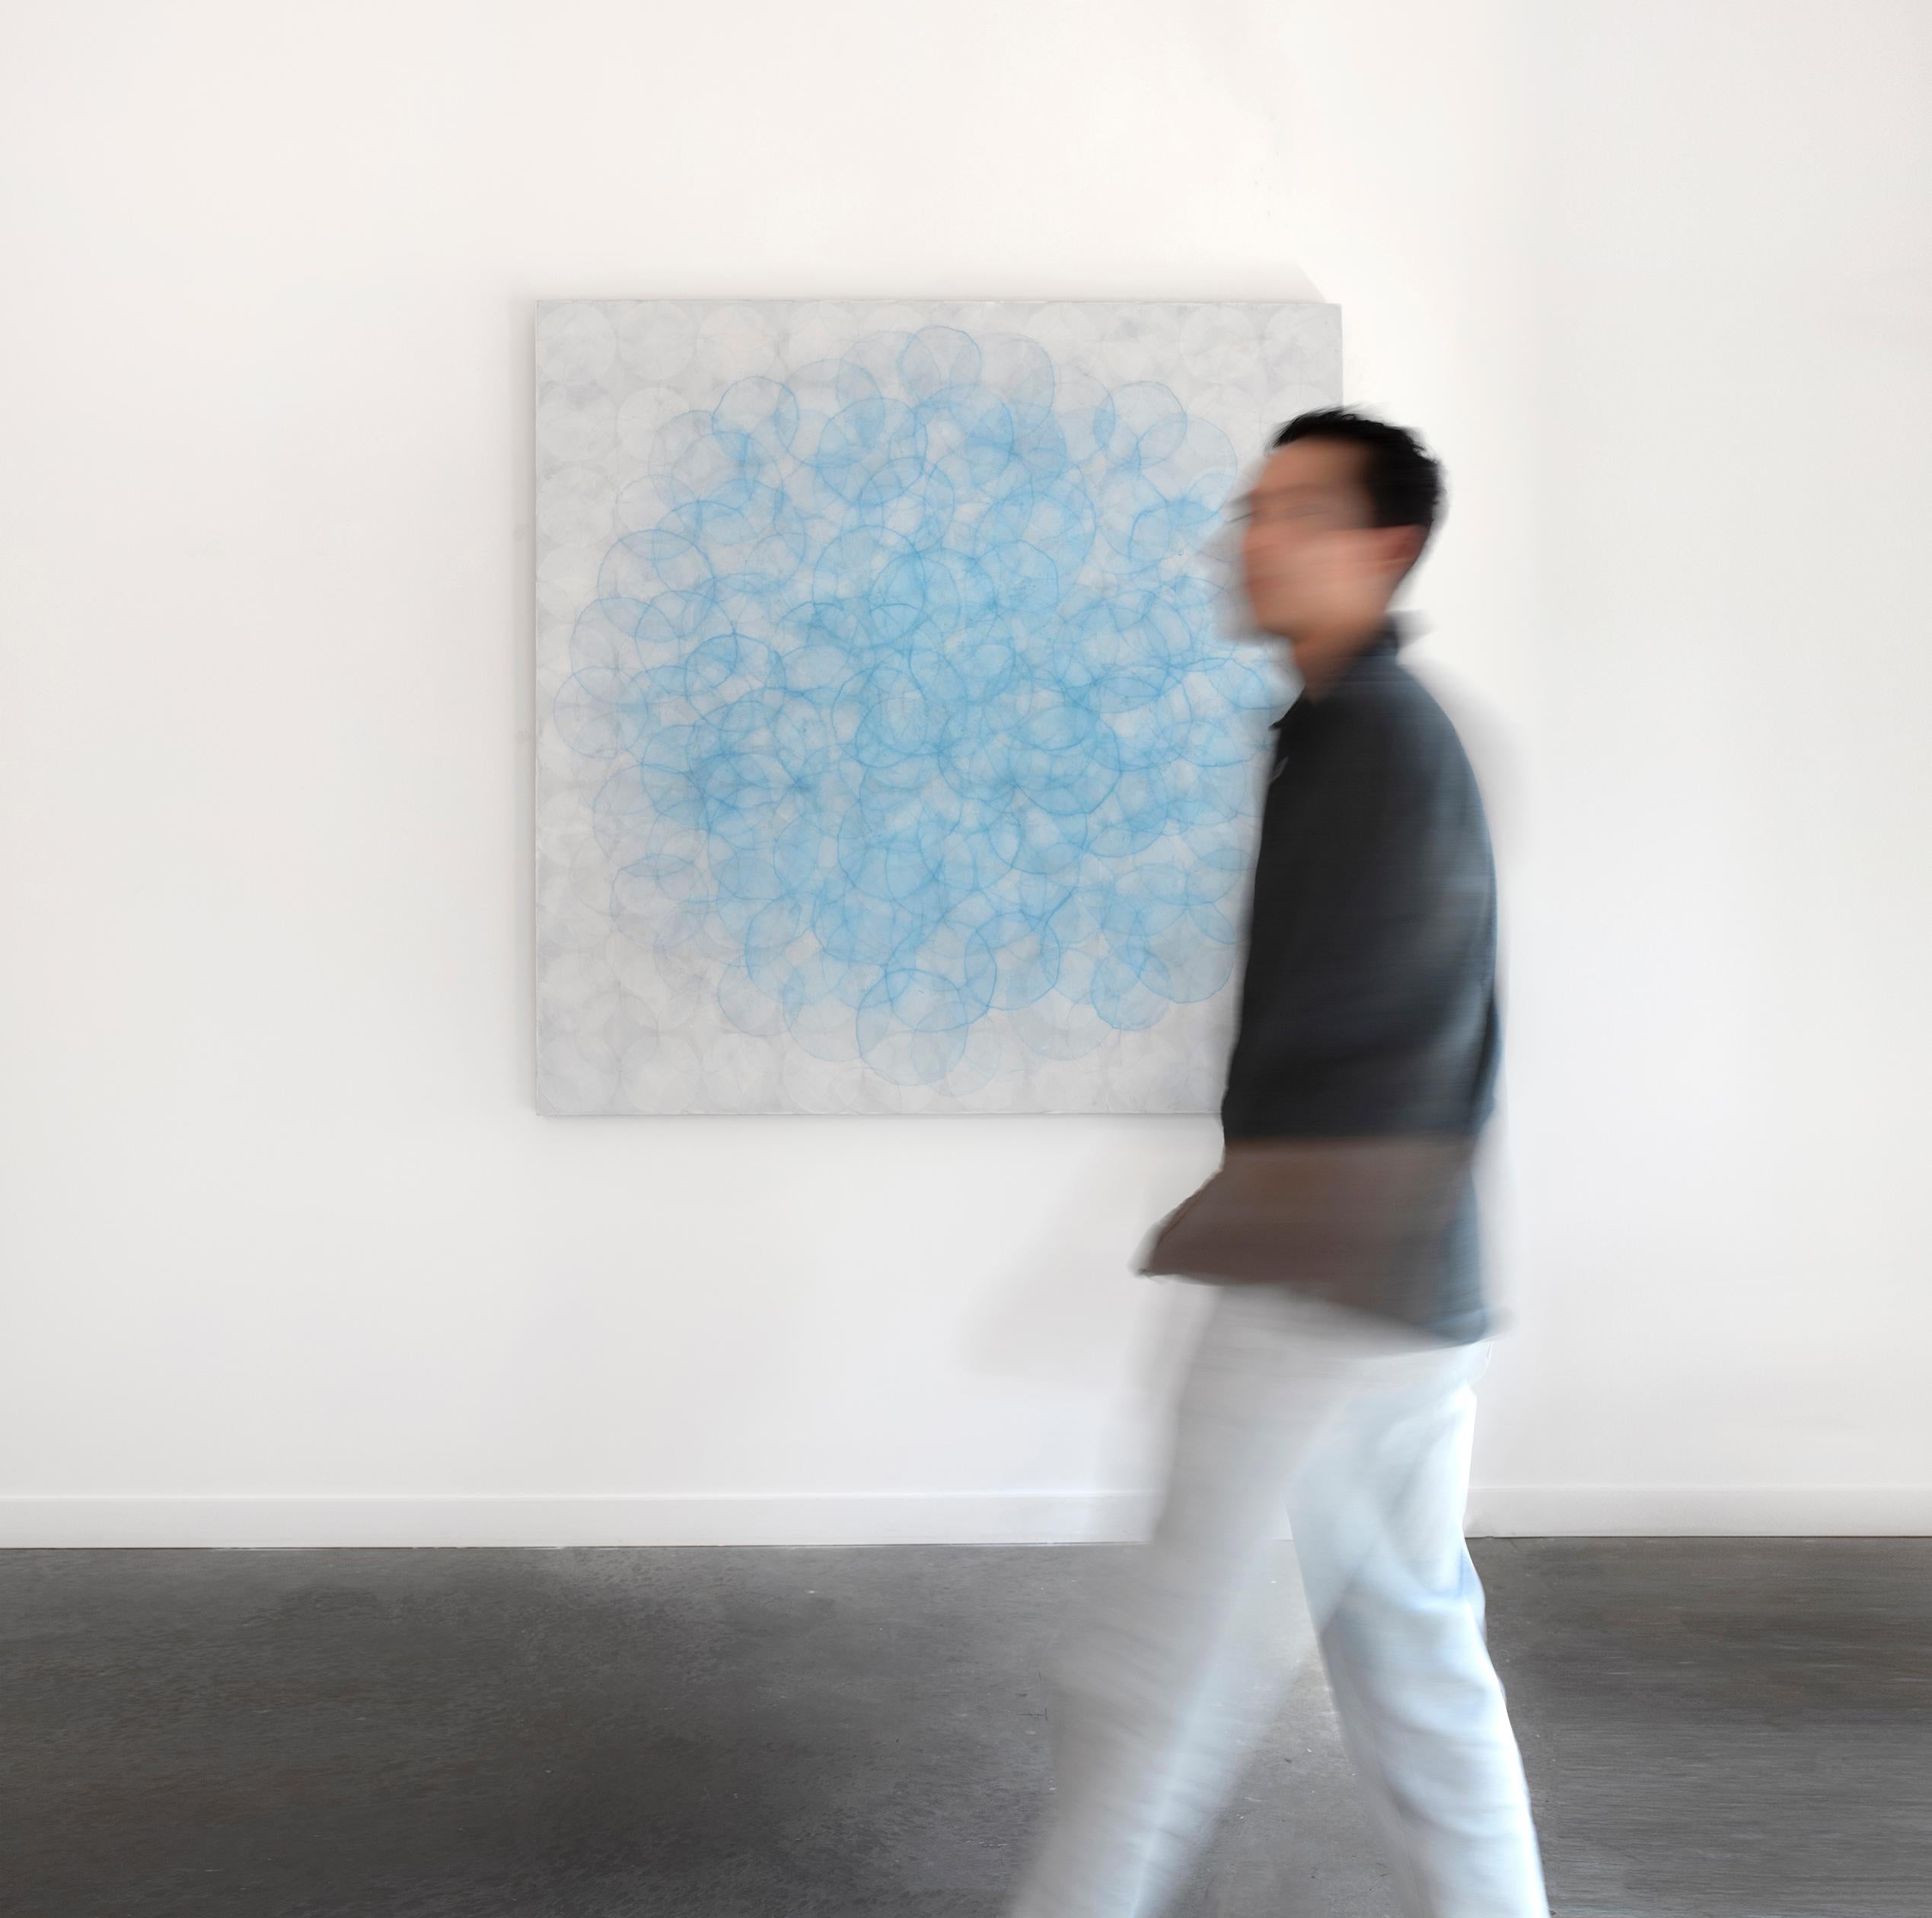 Dieses große abstrakte zeitgenössische Gemälde von Roger Mudre zeigt viele leichte Kreisformen, die konzentrisch übereinander geschichtet sind, und eine kühle blaue und silberne Farbpalette. Das Werk ist mit Acrylfarbe über Marmorstaub und